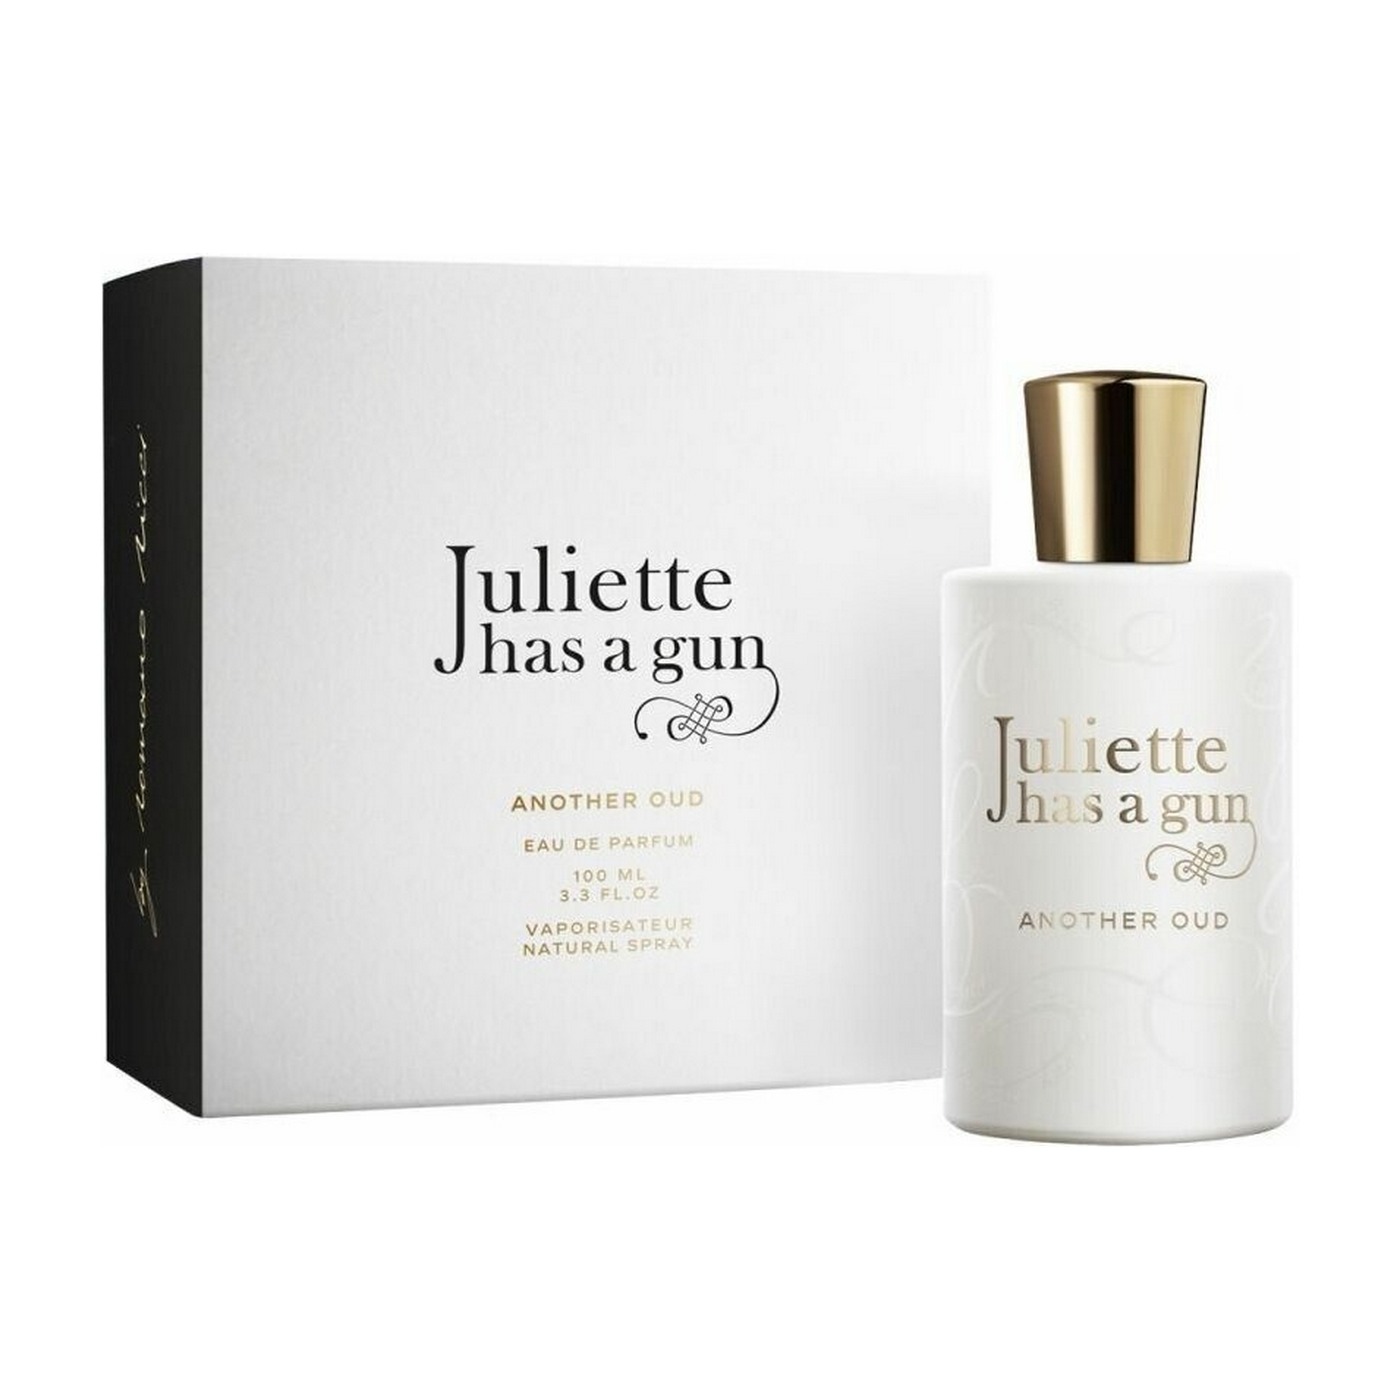 Джульет парфюм. Туалетная вода Juliette has a Gun. Juliette has a Gun not a Perfume парфюмерная вода 100 мл.